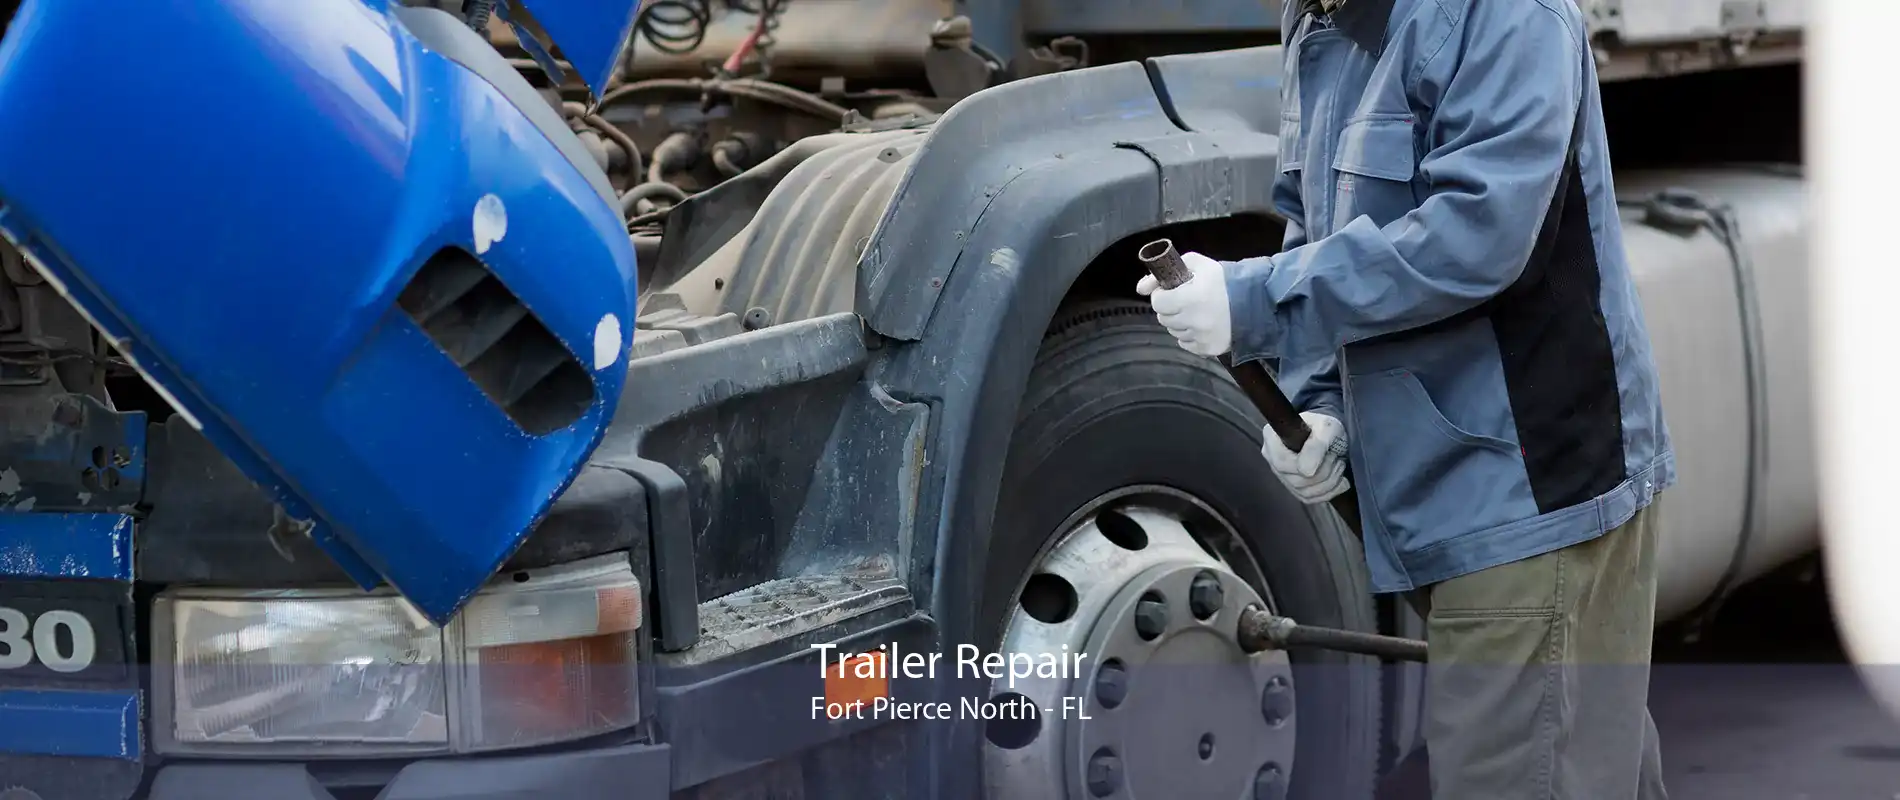 Trailer Repair Fort Pierce North - FL